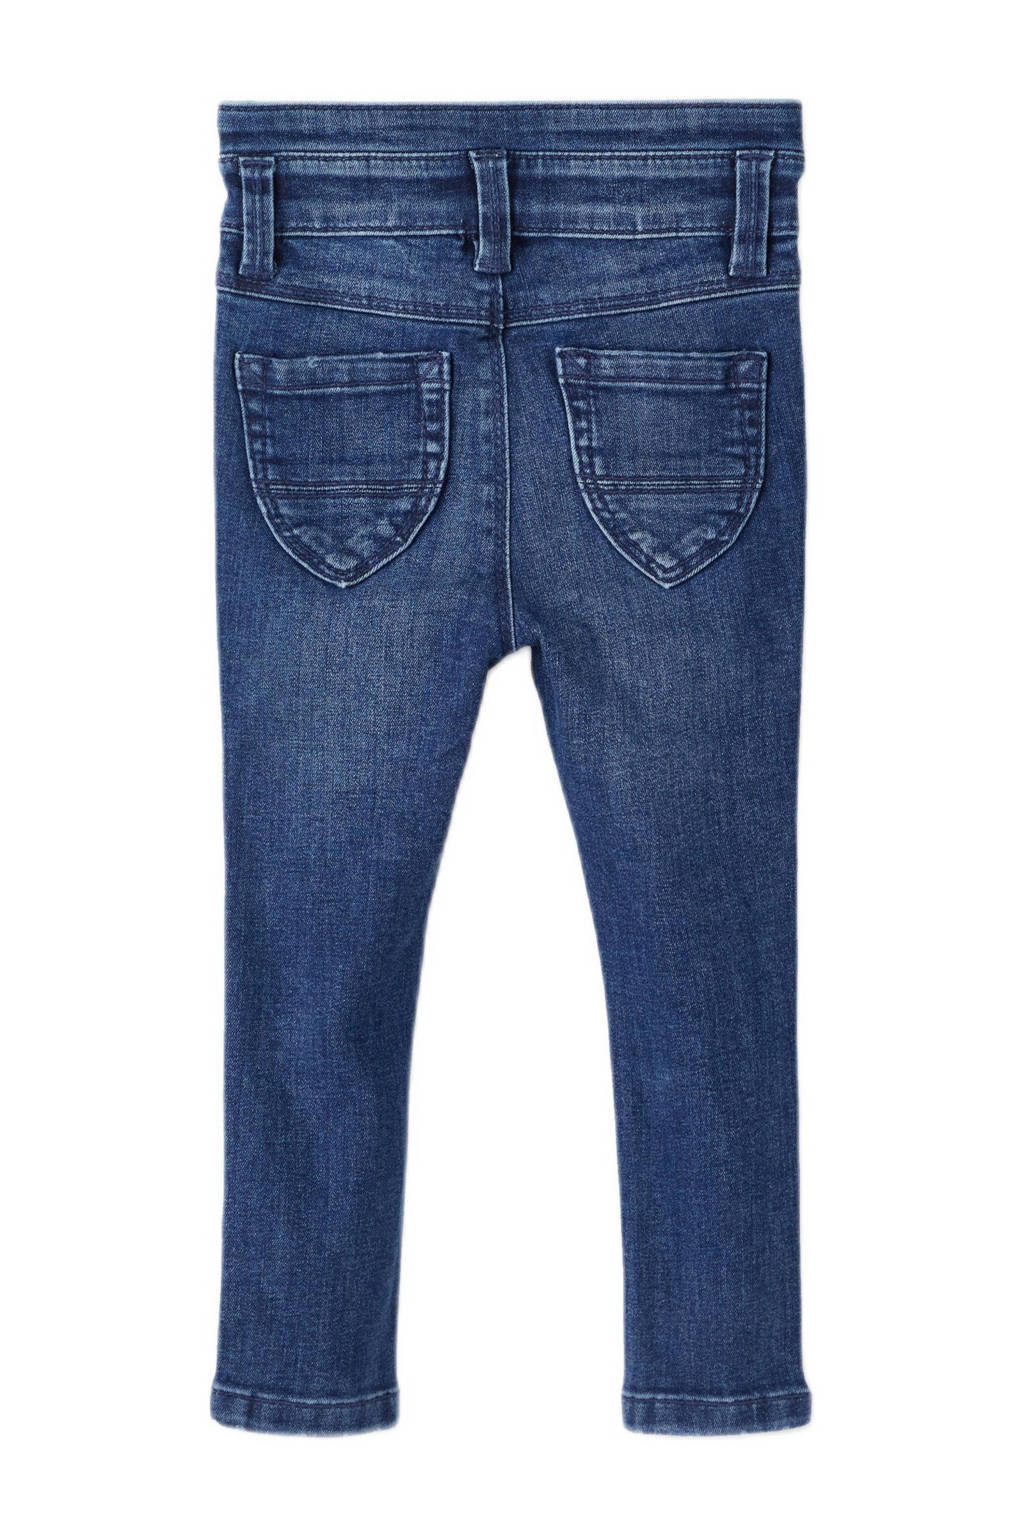 NAME IT MINI skinny jeans NMFPOLLY blue dark denim